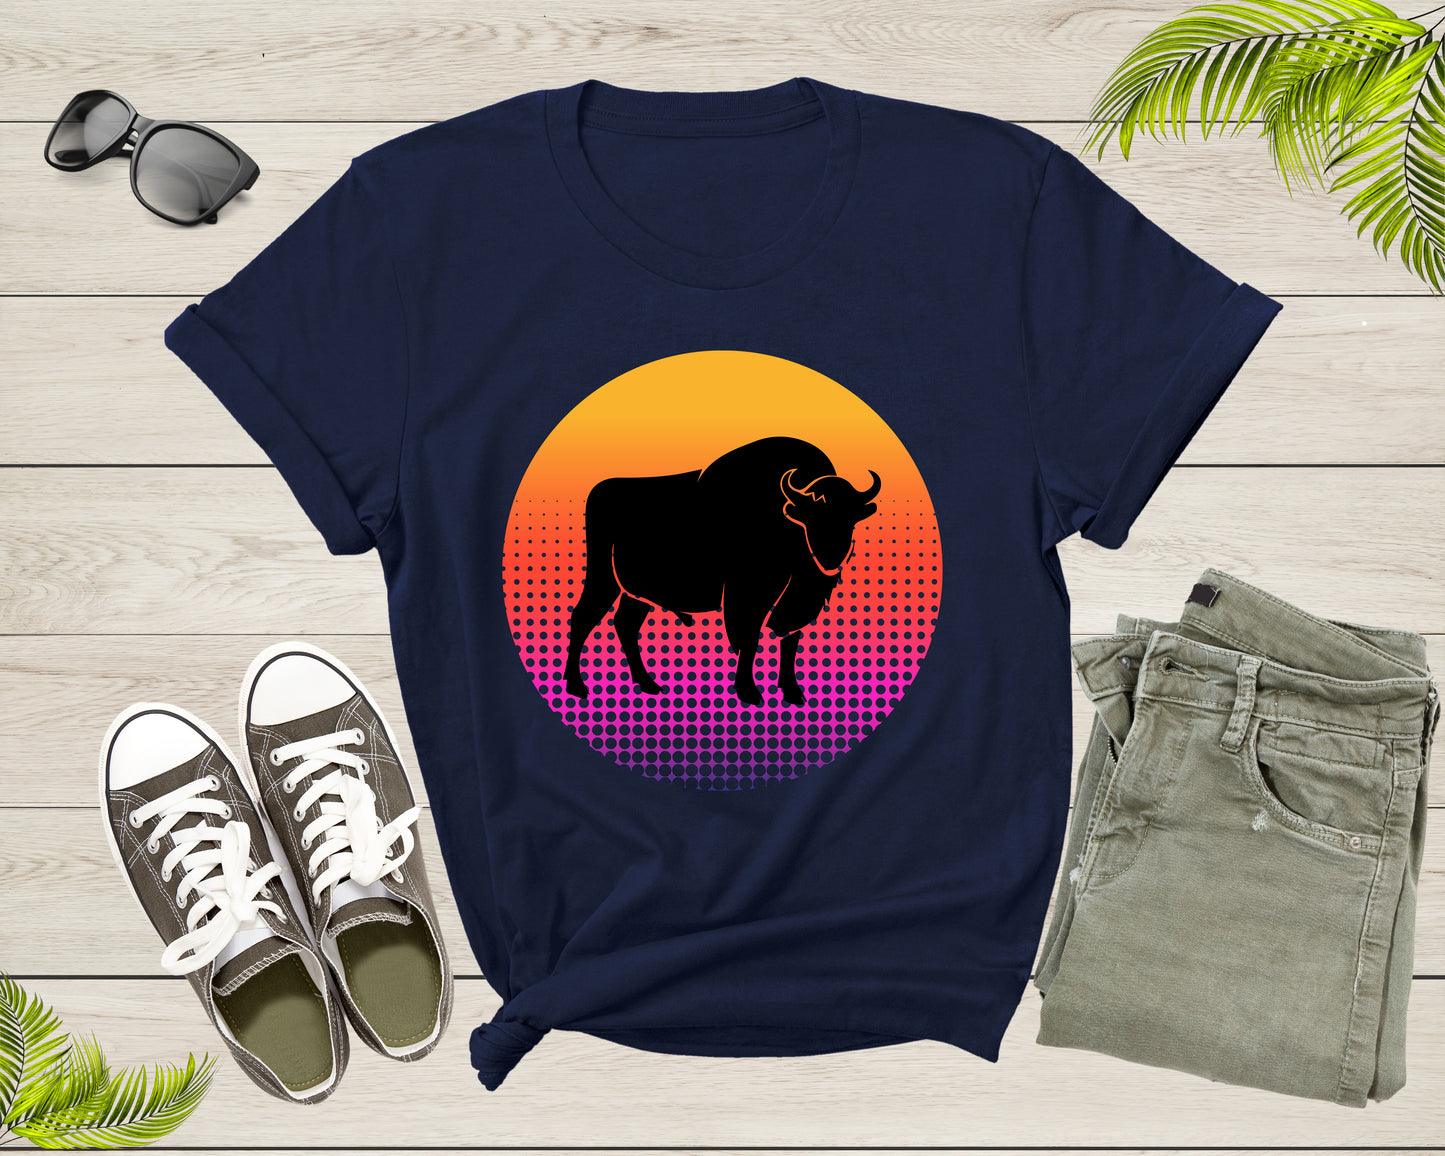 Cool Bull Cattle Animal Silhouette Farm Animal at Sunset T-Shirt Bull Shirt for Men Women Kids Boys Girls Teens Graphic Animal Gift Tshirt